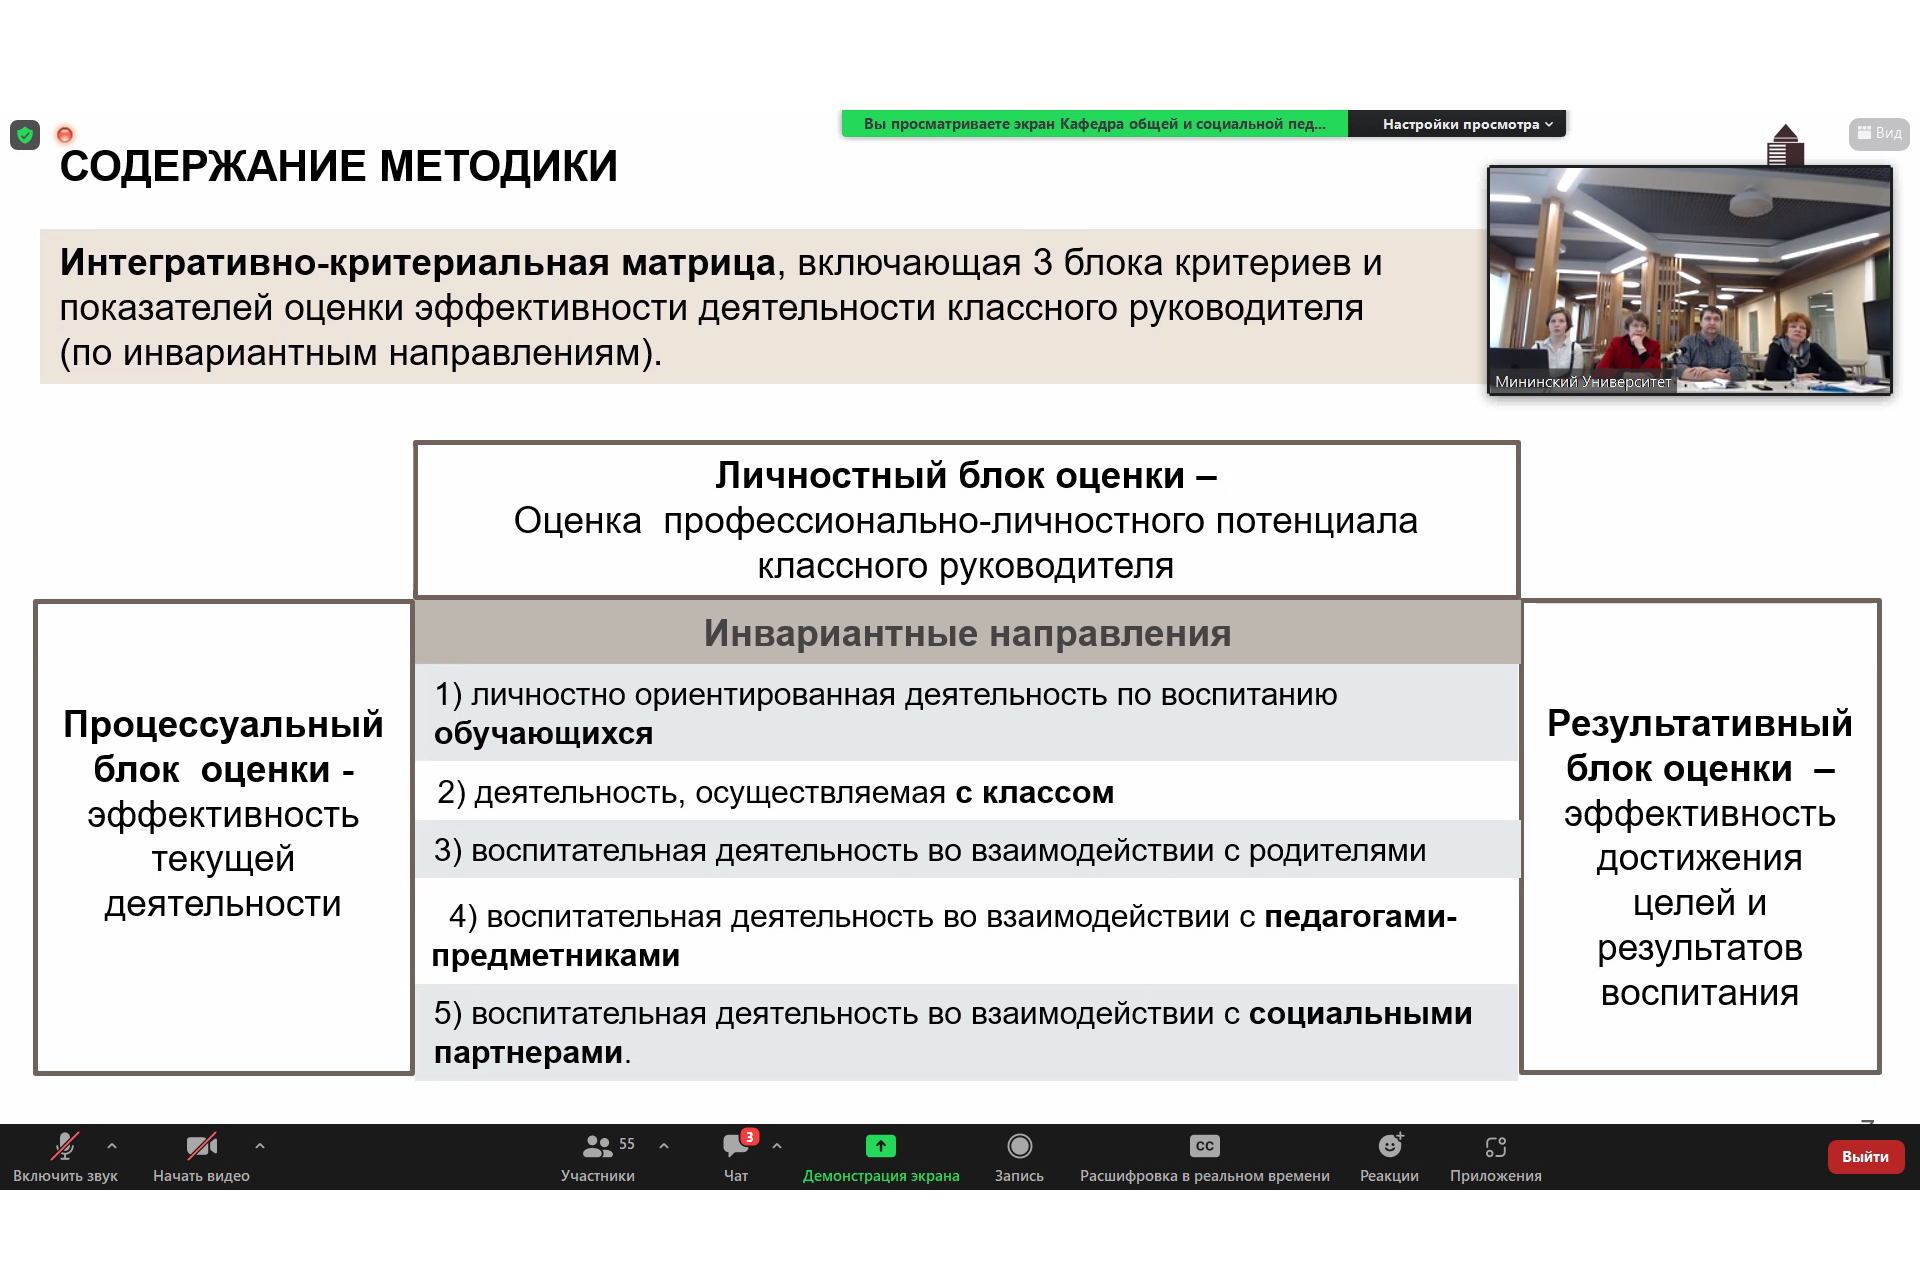 Методику оценки эффективности деятельности классного руководителя обсудили в Мининском университете